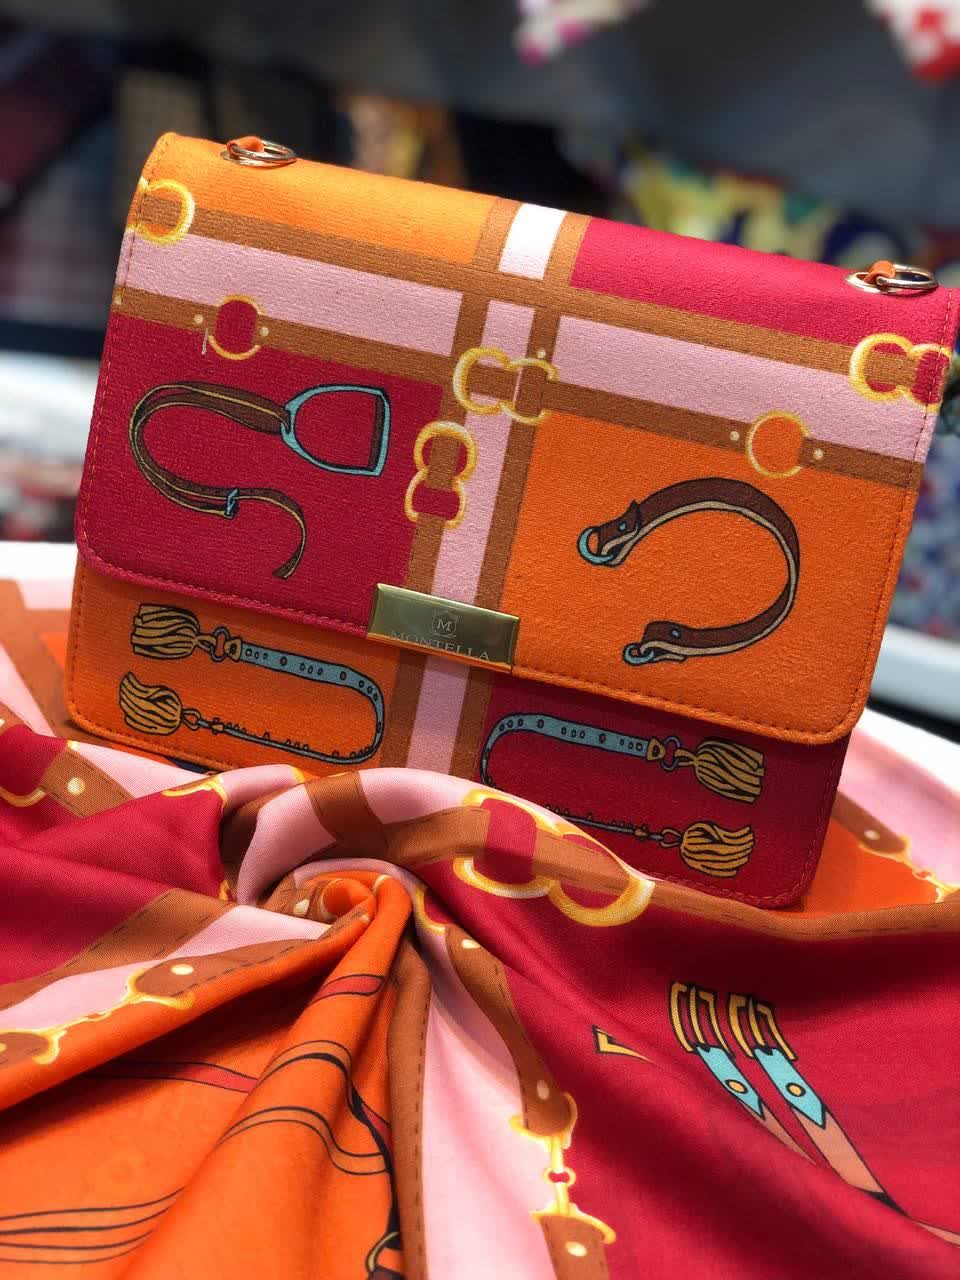 ست کیف و روسری و زنانه باکیفیت رنگ نارنجی طرح هرمس کمربندی با کیف پاسپورتی دسته زنجیری با ارسال رایگان کد mo297